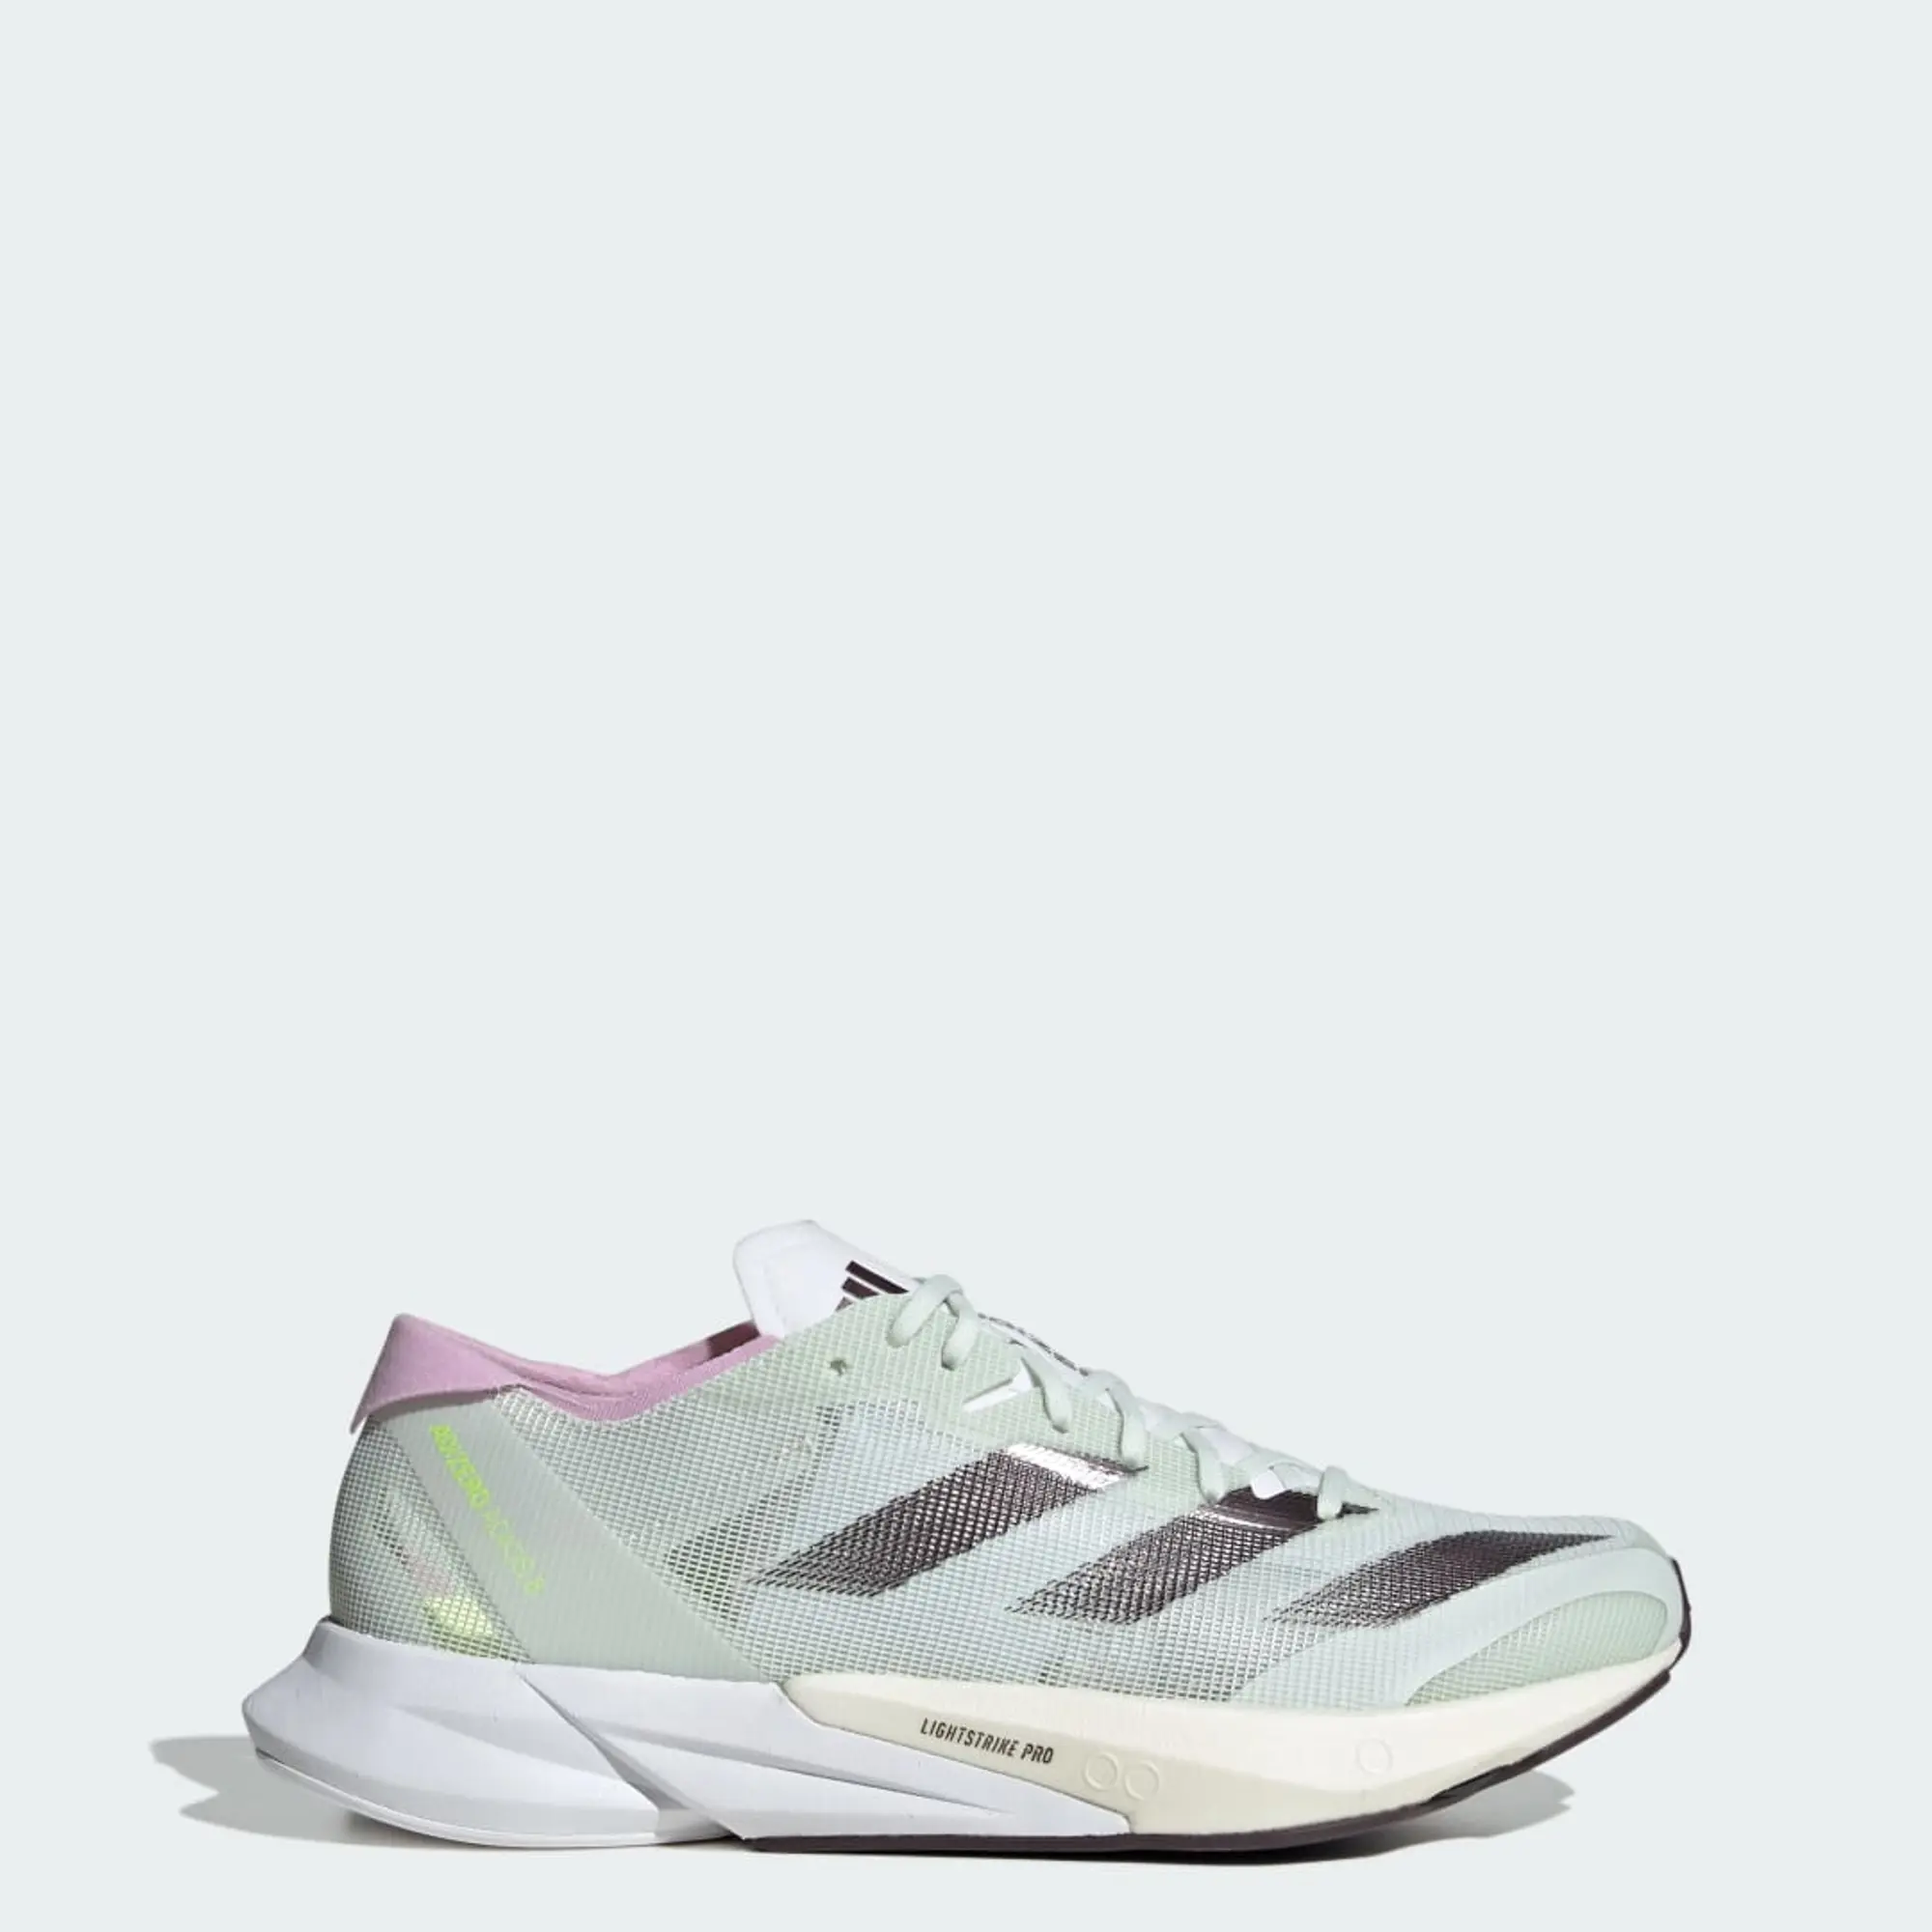 adidas Adizero Adios 8 Competition Running Shoe Women - Multicoloured